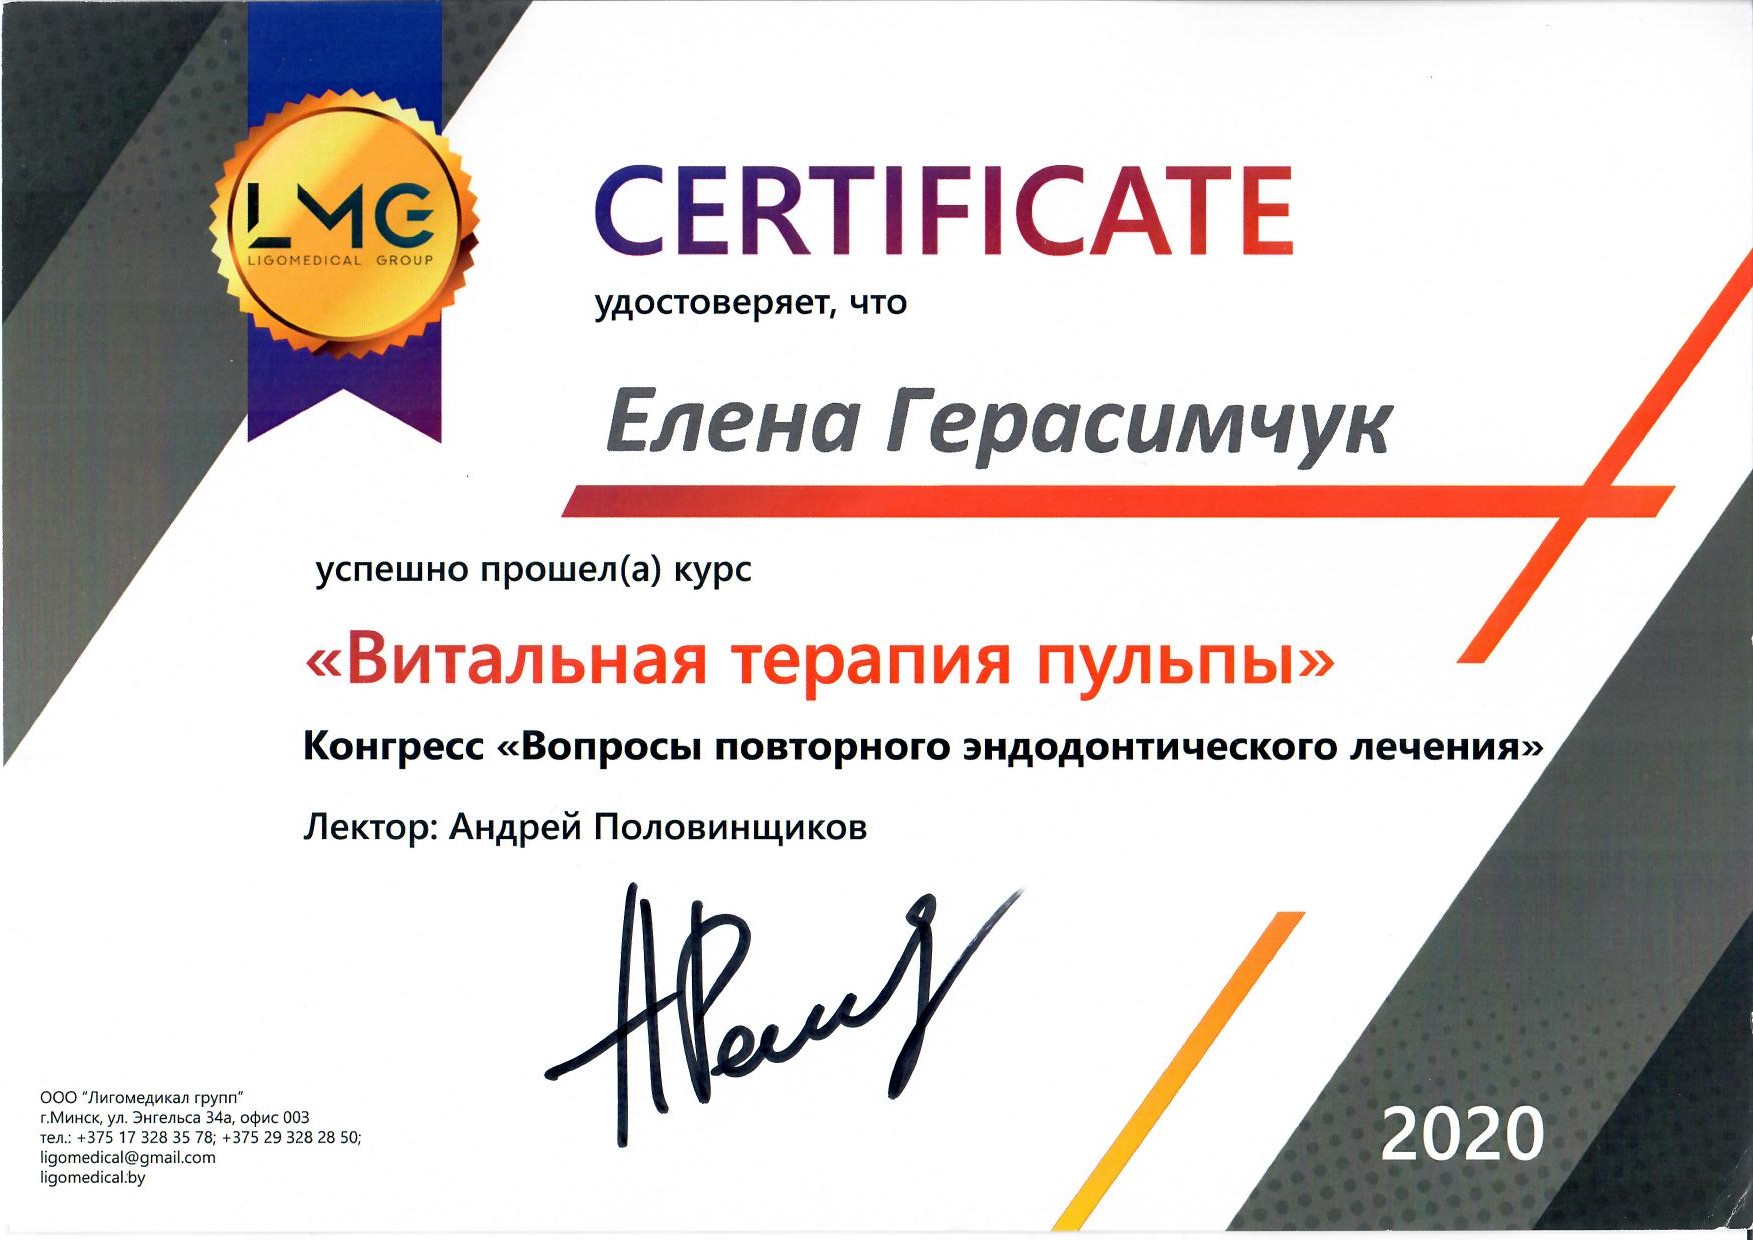 Gerasinchuk 02 2020 1